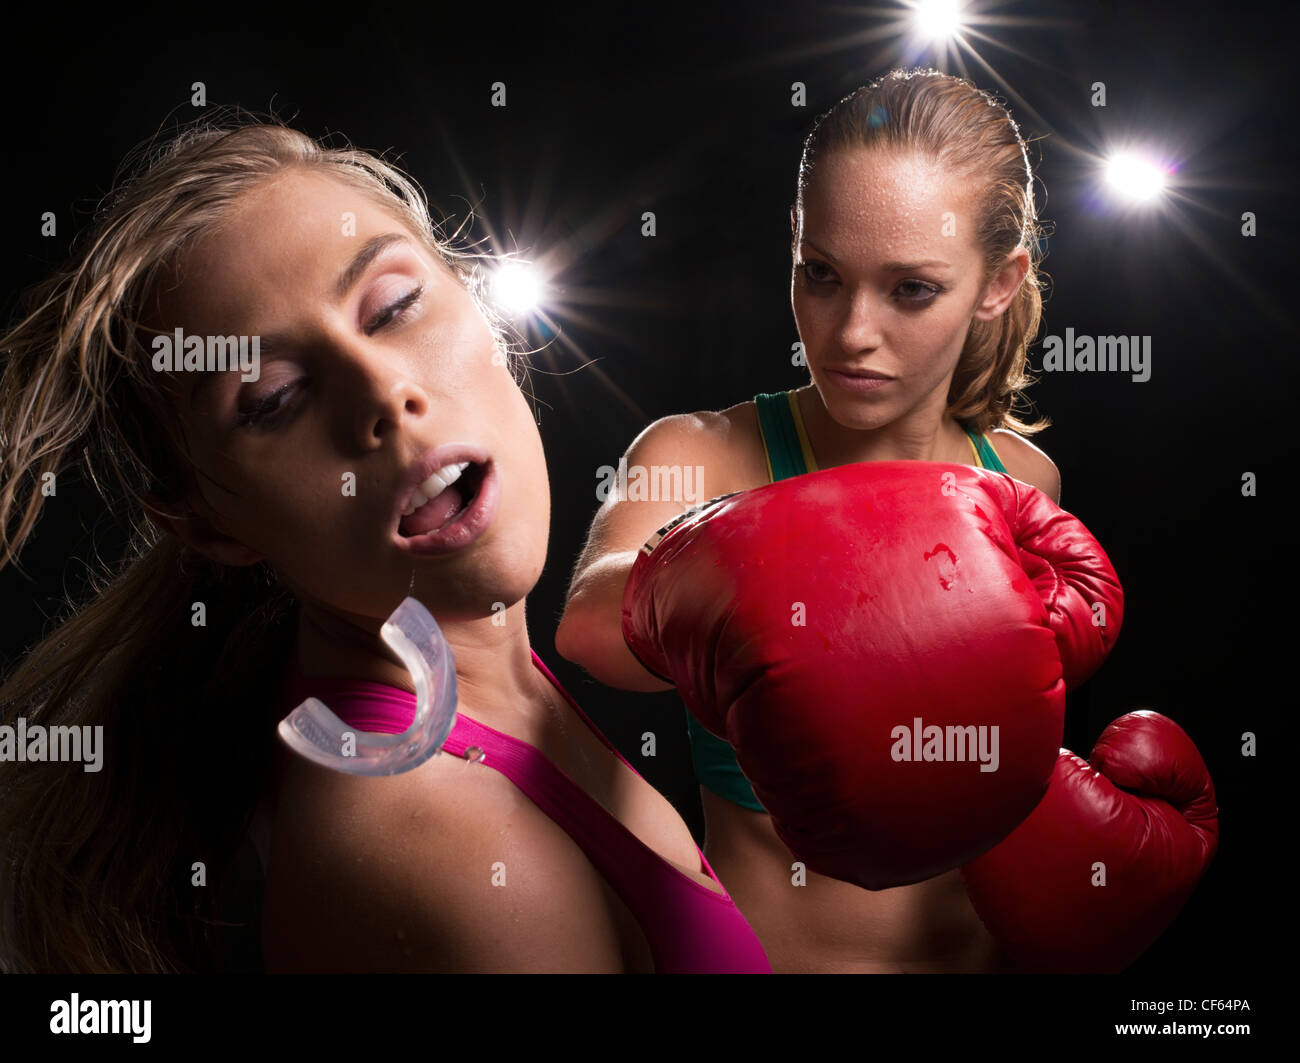 Knockout punch boxe féminine Photo Stock - Alamy